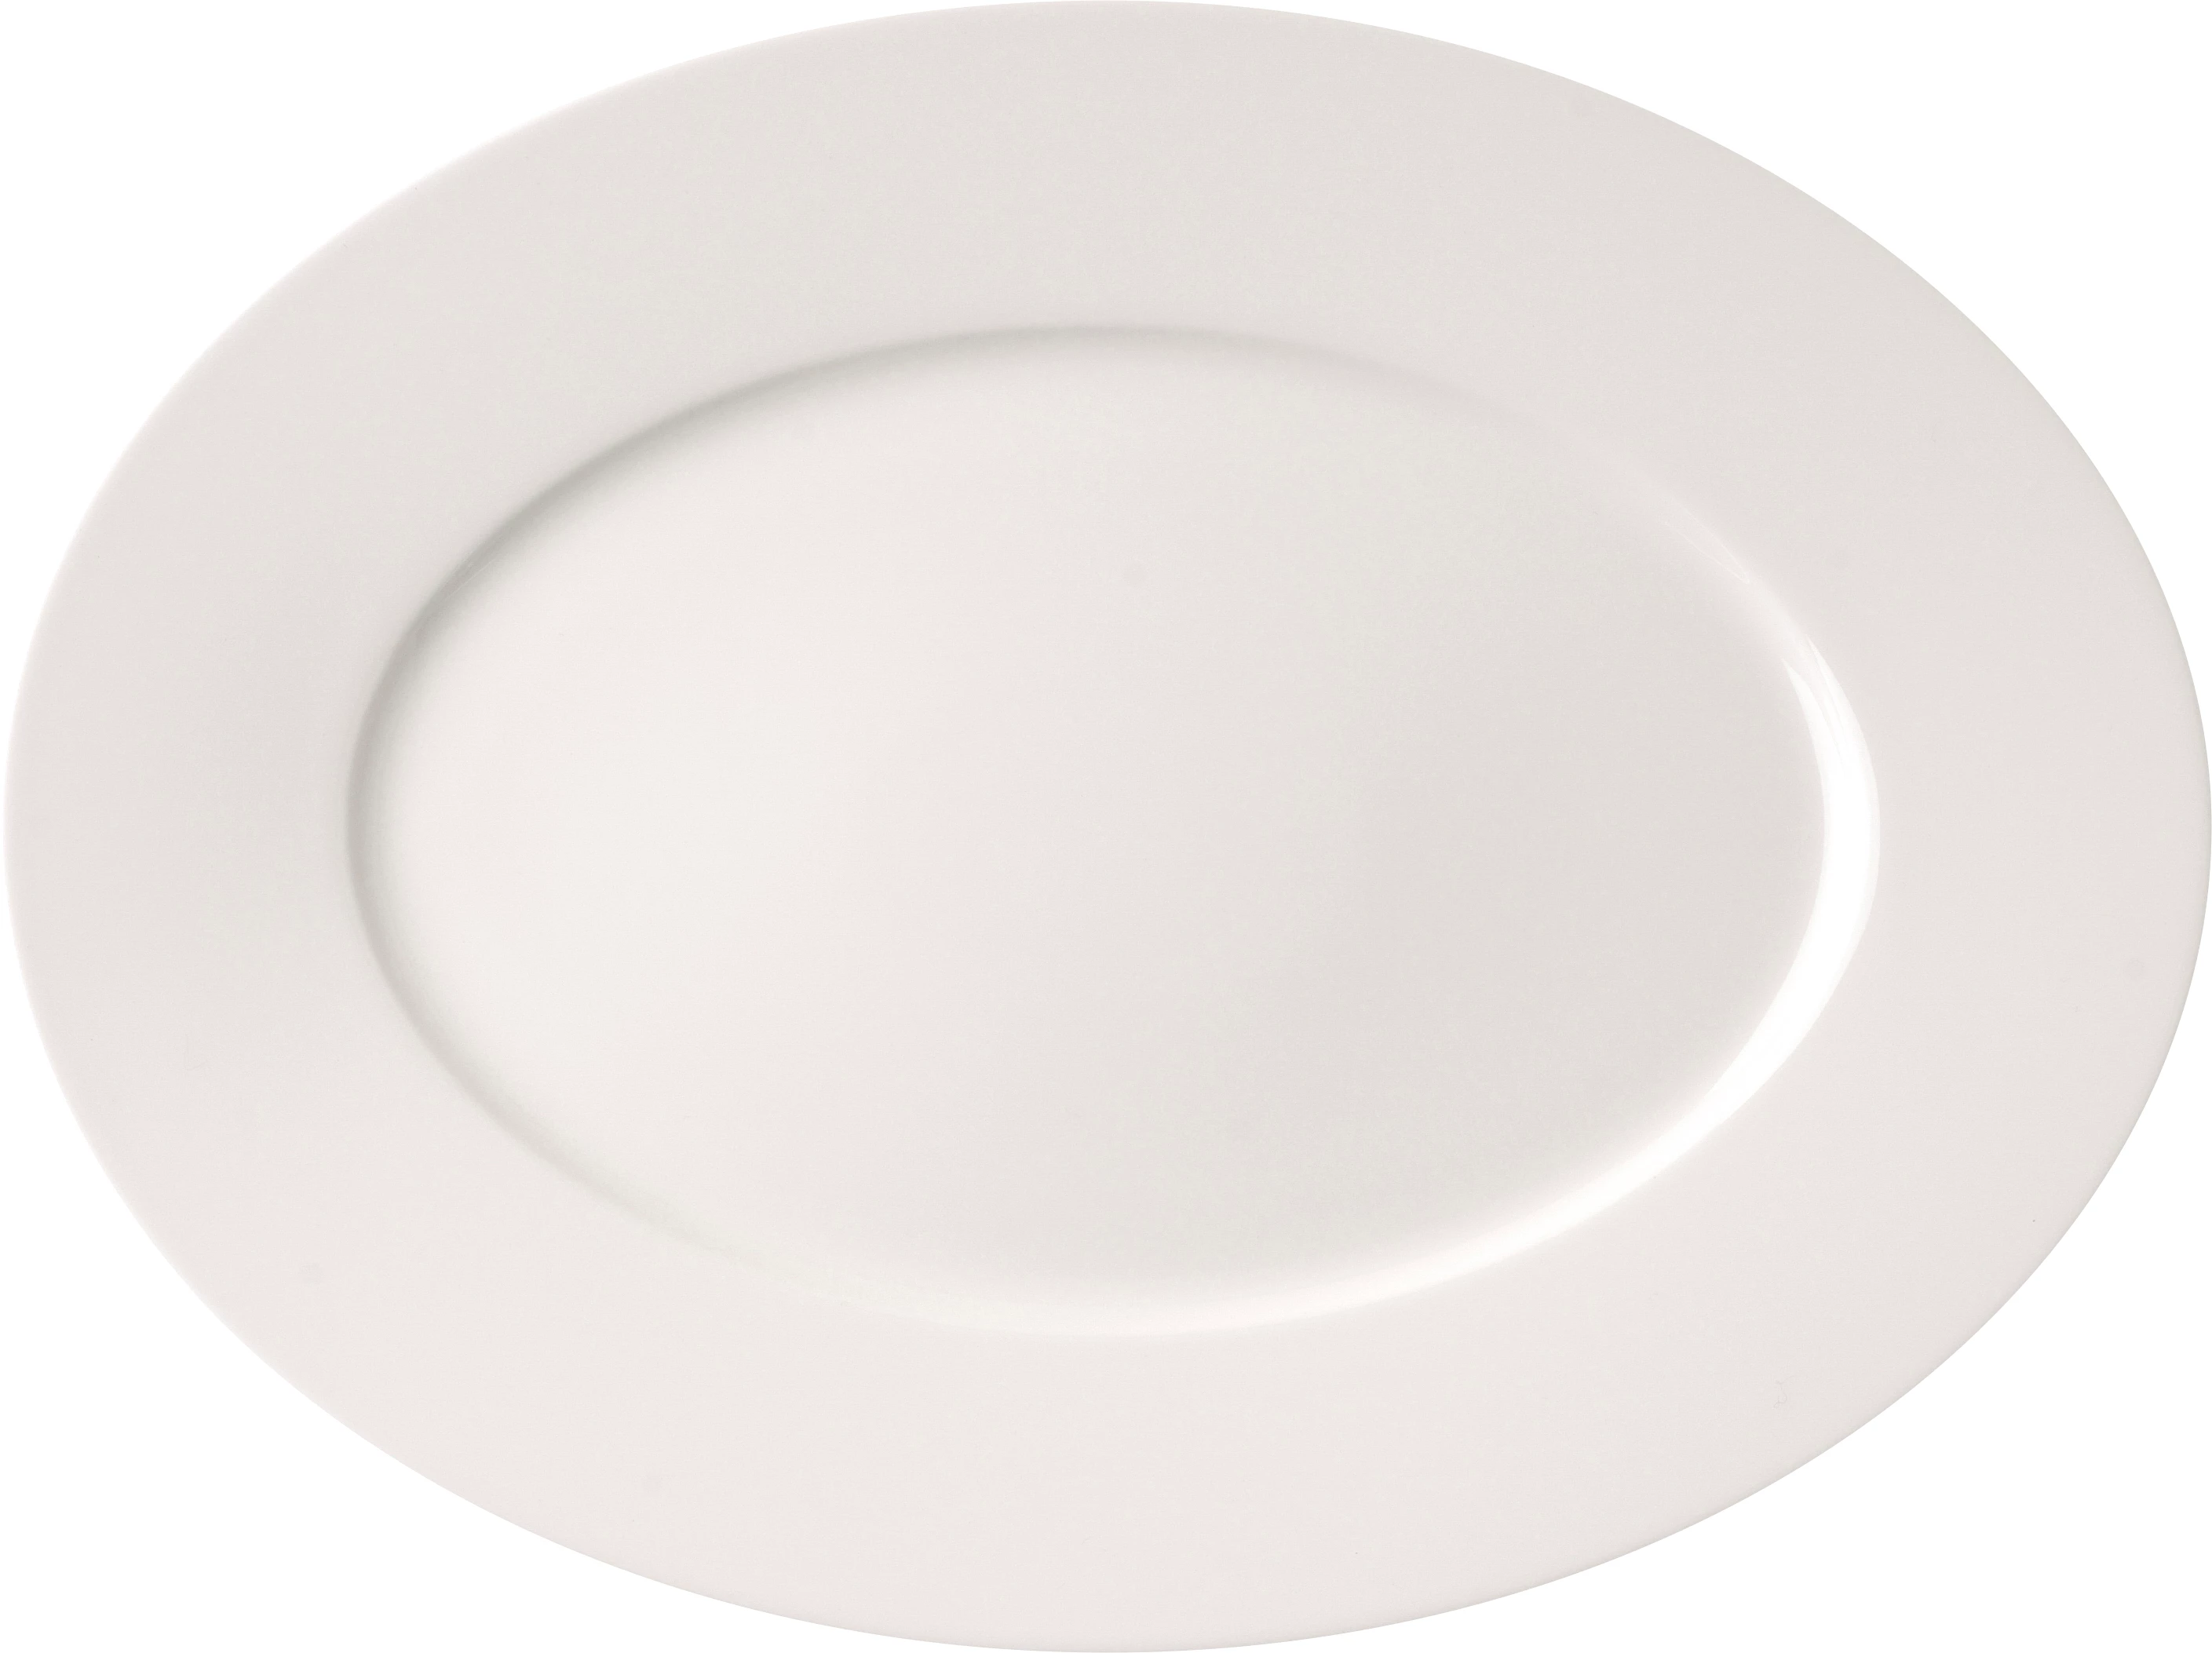 RAK Fine Dine fad, ovalt, 34 x 25,5 cm